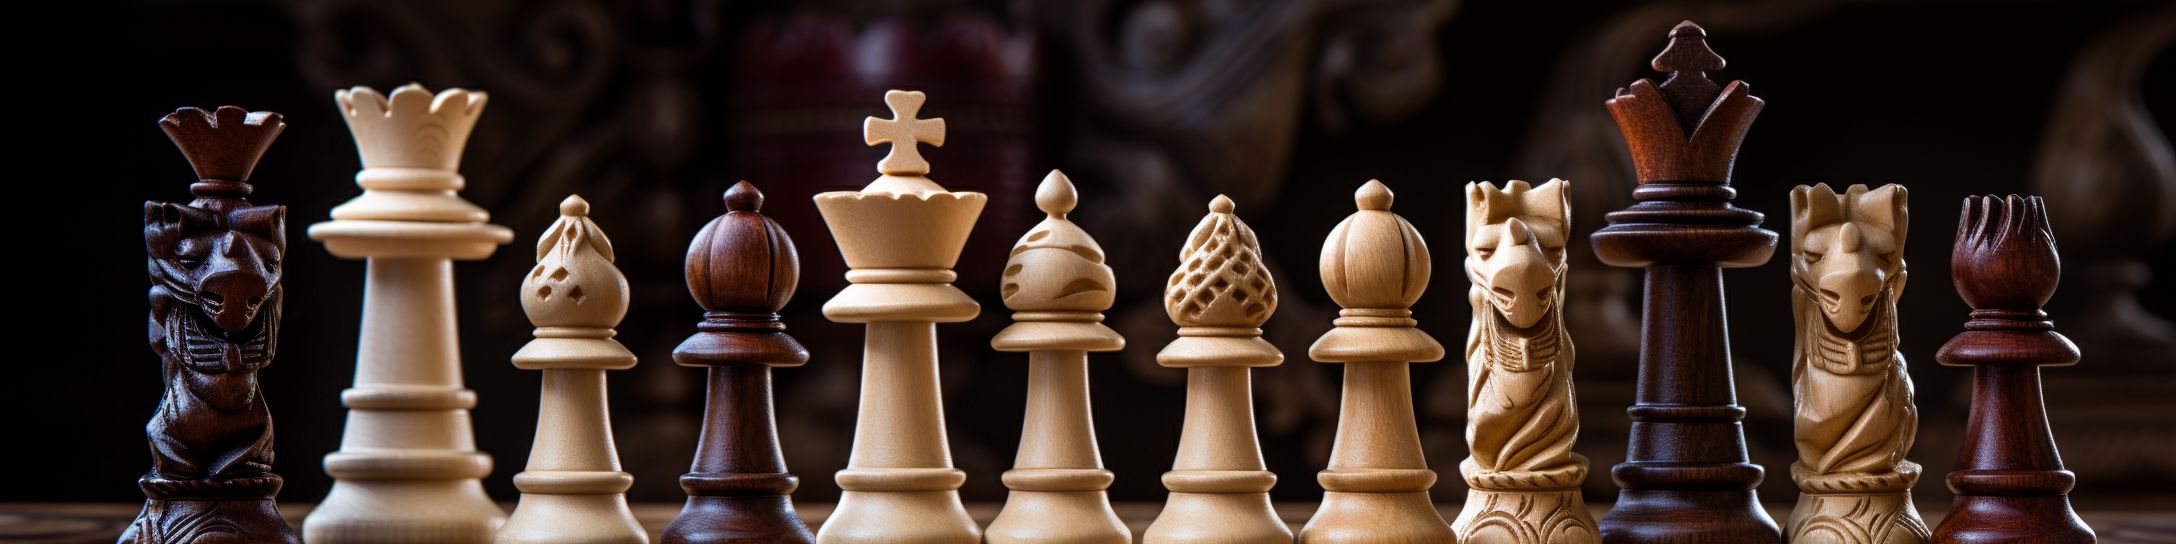 Les types de bois utilisés dans les jeux d'échecs